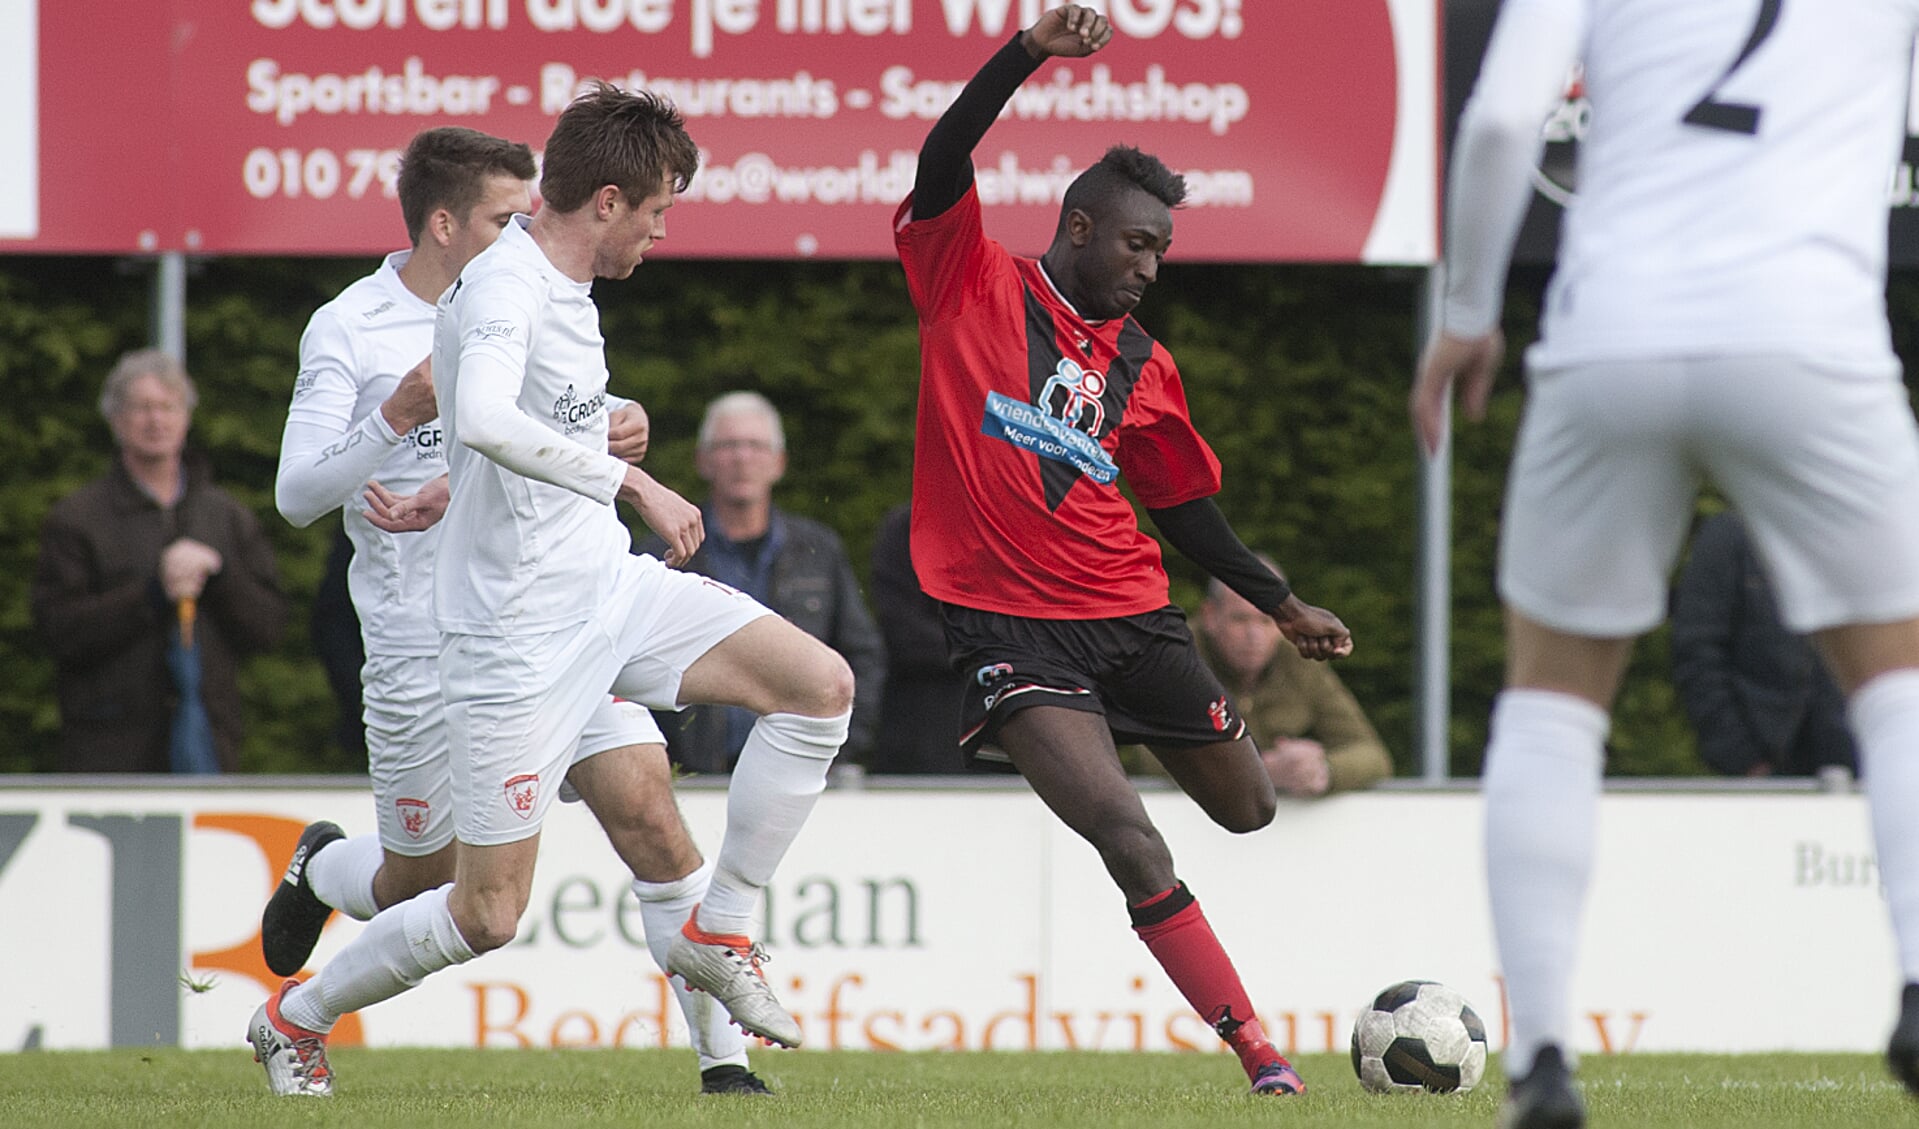 Jevon Blijd kwam naar Vitesse om het plezier in voetbal terug te vinden en heeft het er ook naar zijn zin. 